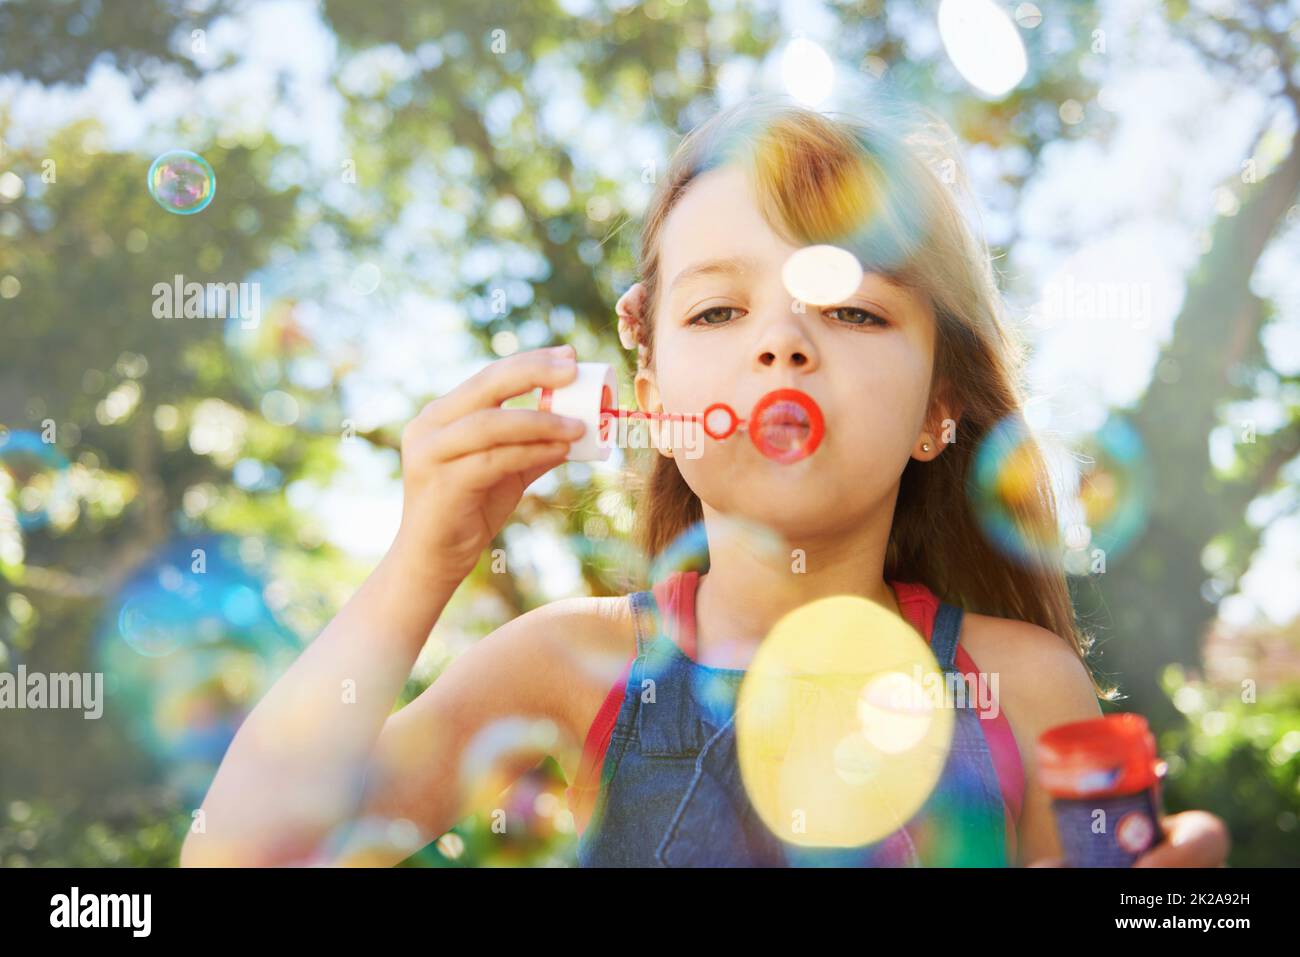 Bulles et vacances d'été. Photo d'une jeune fille mignonne soufflant des bulles à l'extérieur. Banque D'Images